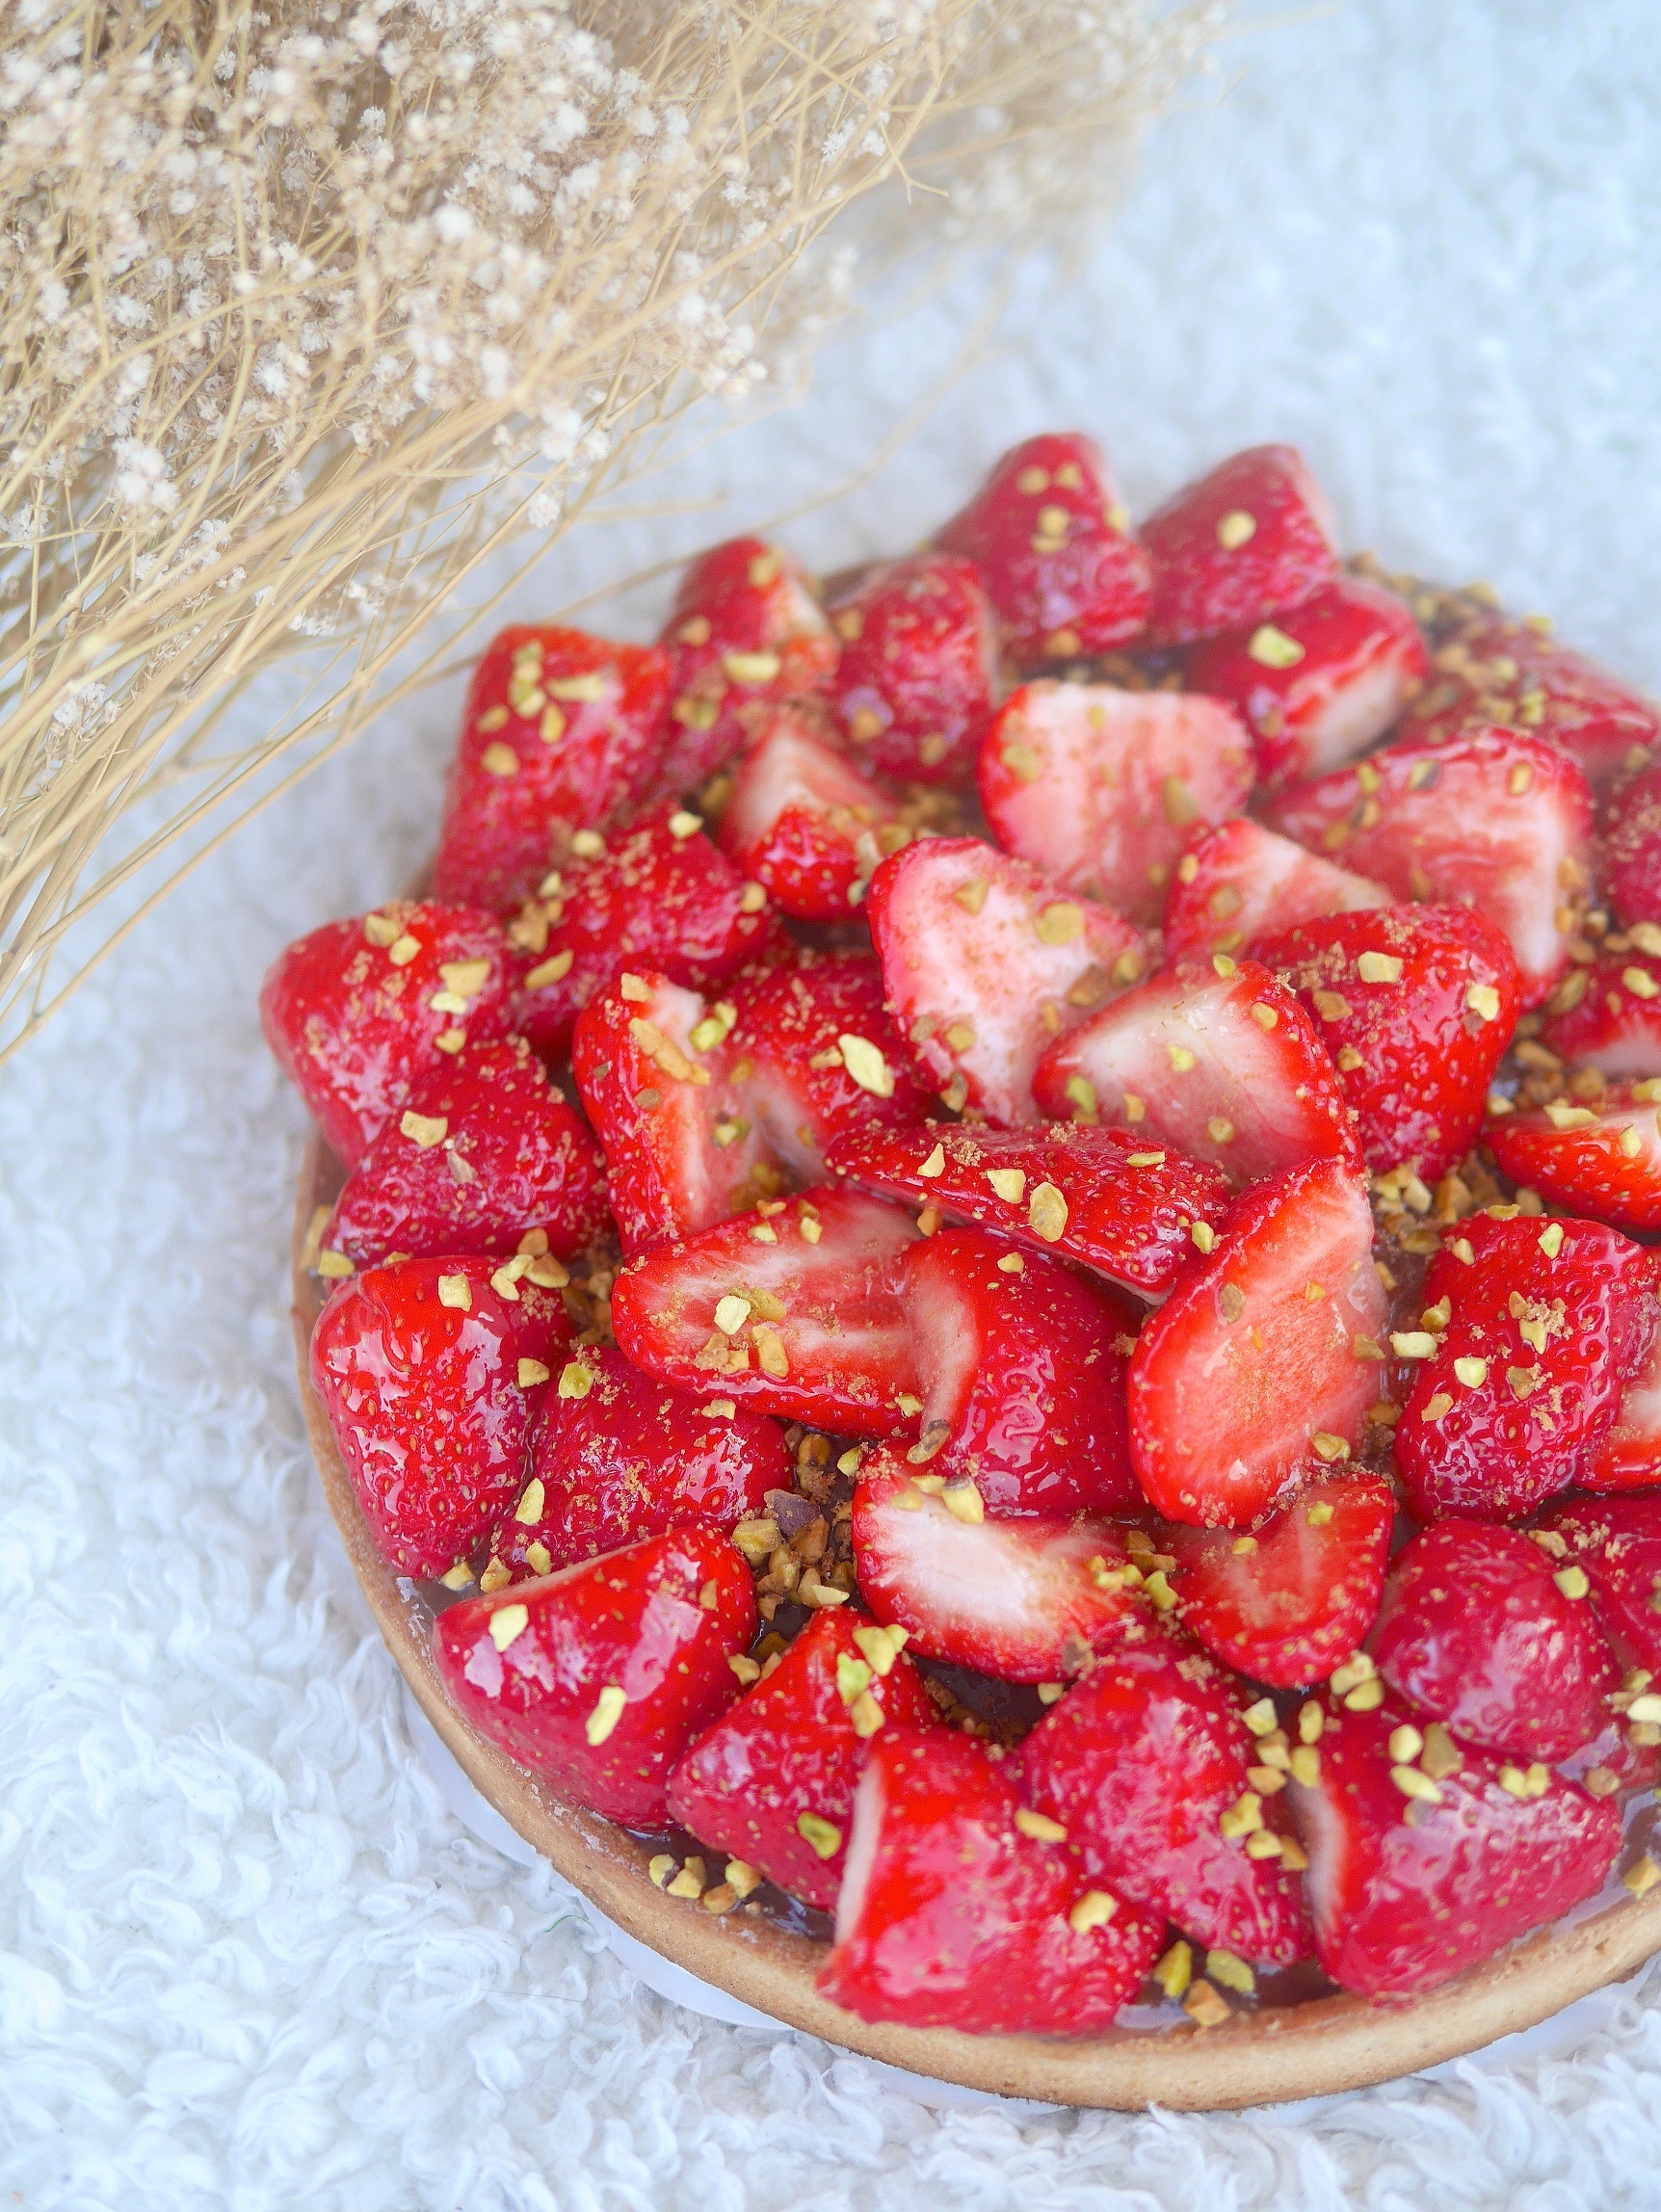 Délicieuse tarte fraises-rhubarbe et éclats de pistaches en version végétale et sans gluten :-)